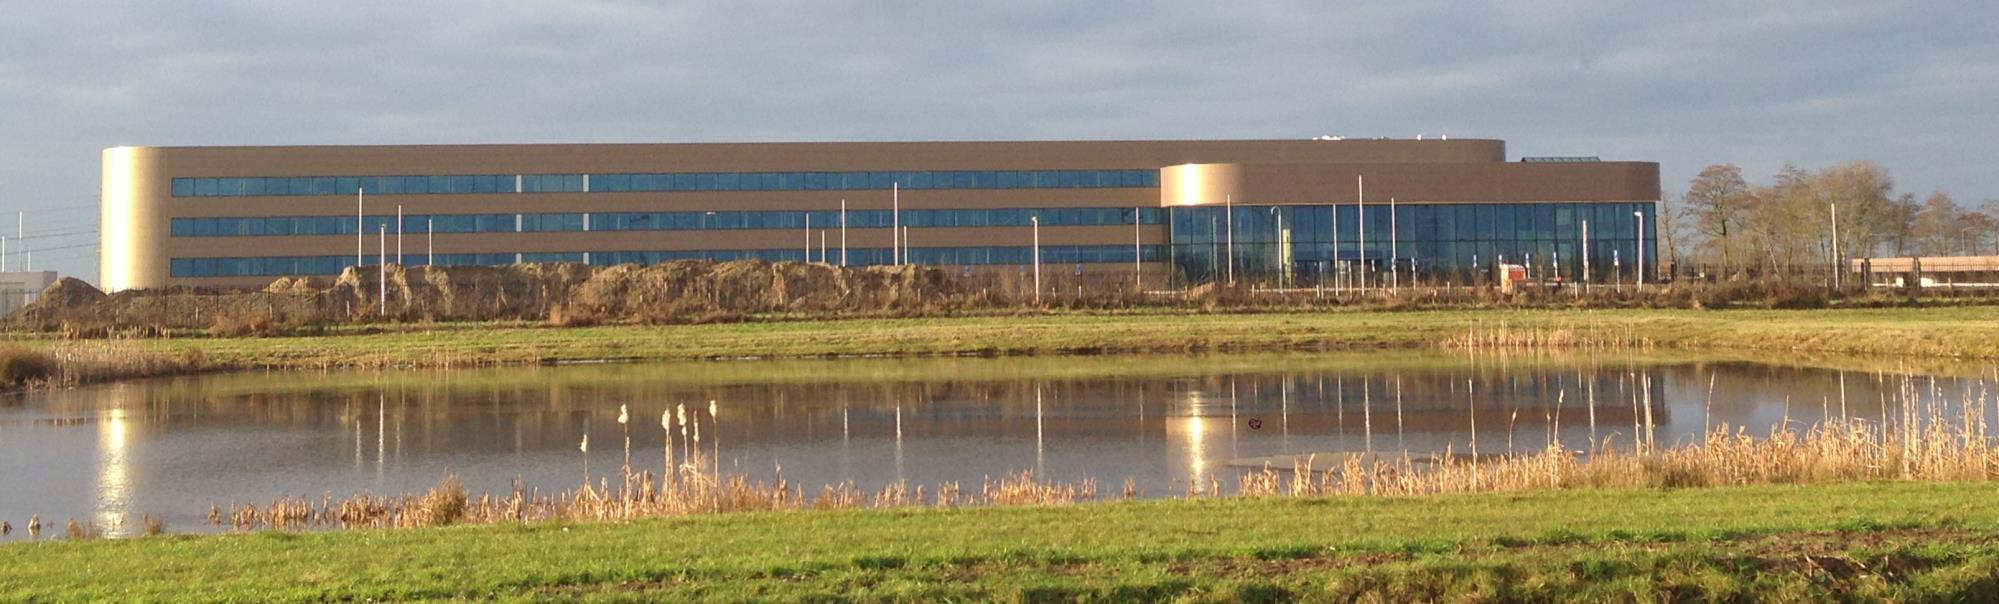 WDP/Wehkamp.nl te Zwolle Grootste geautomatiseerde e-commerce distributiecentrum ter wereld 100 Mio investering 55.